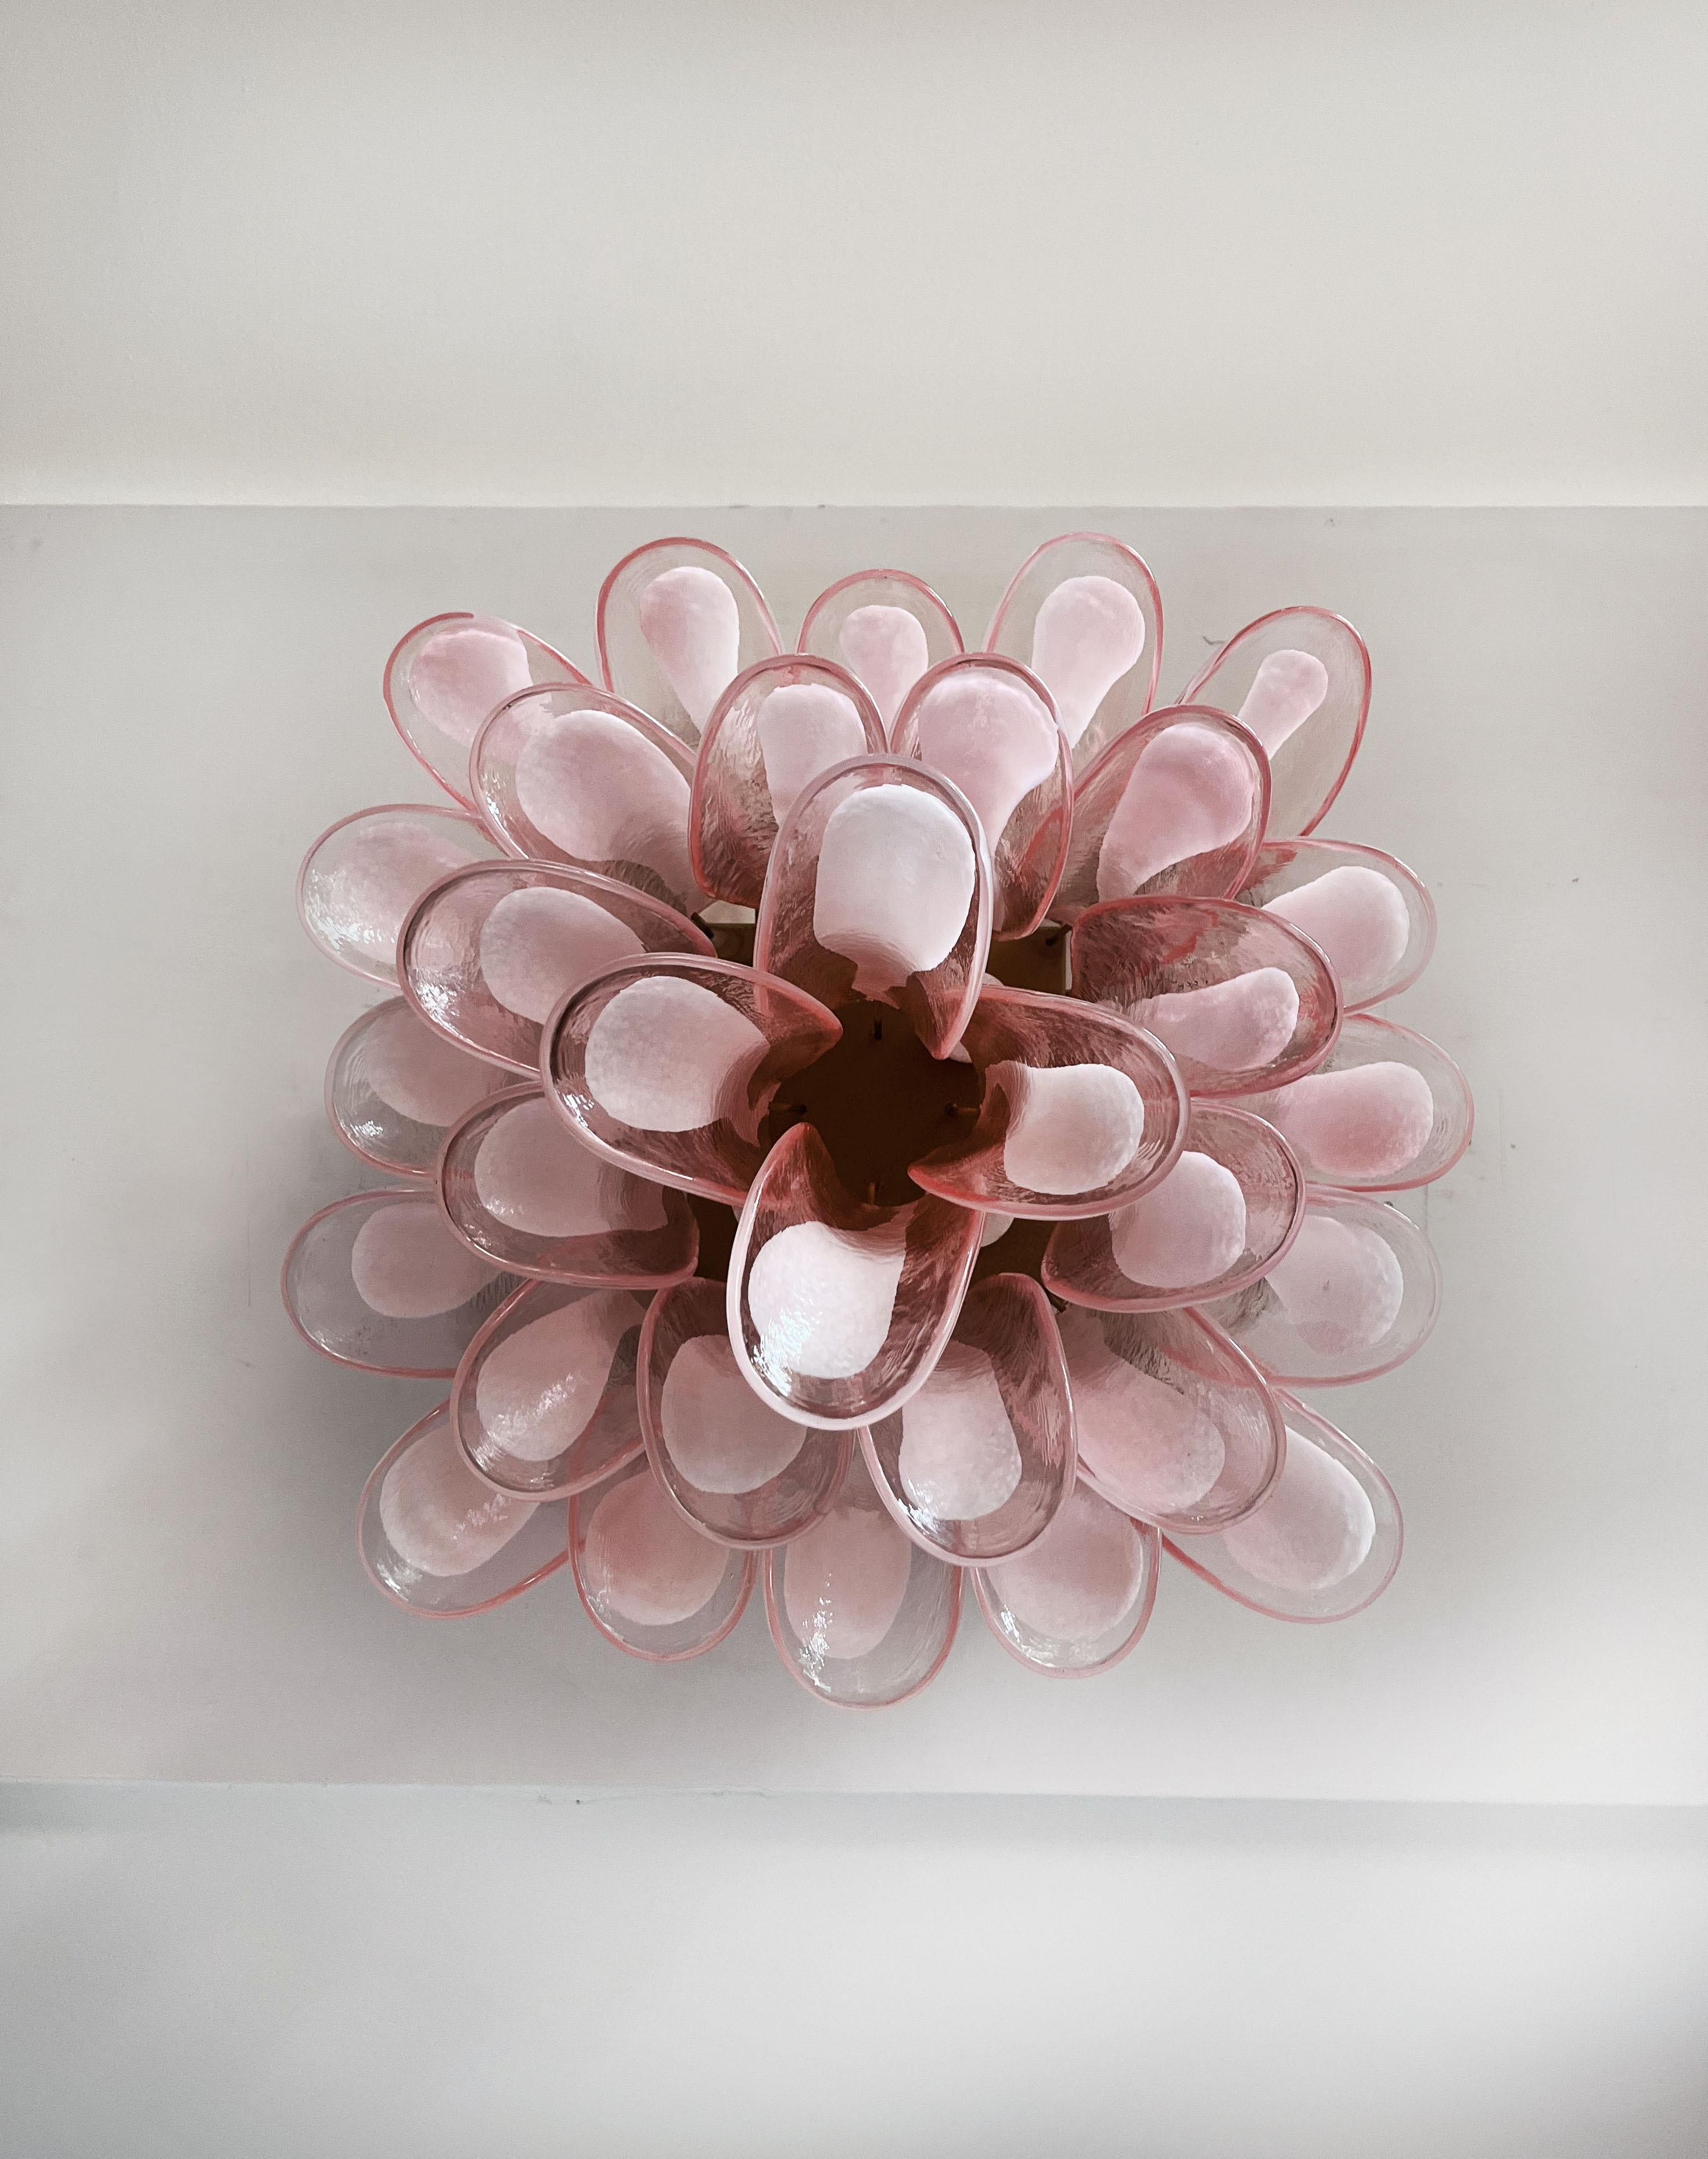 Murano ceiling lamp - 32 PINK glass petals In Good Condition For Sale In Gaiarine Frazione Francenigo (TV), IT